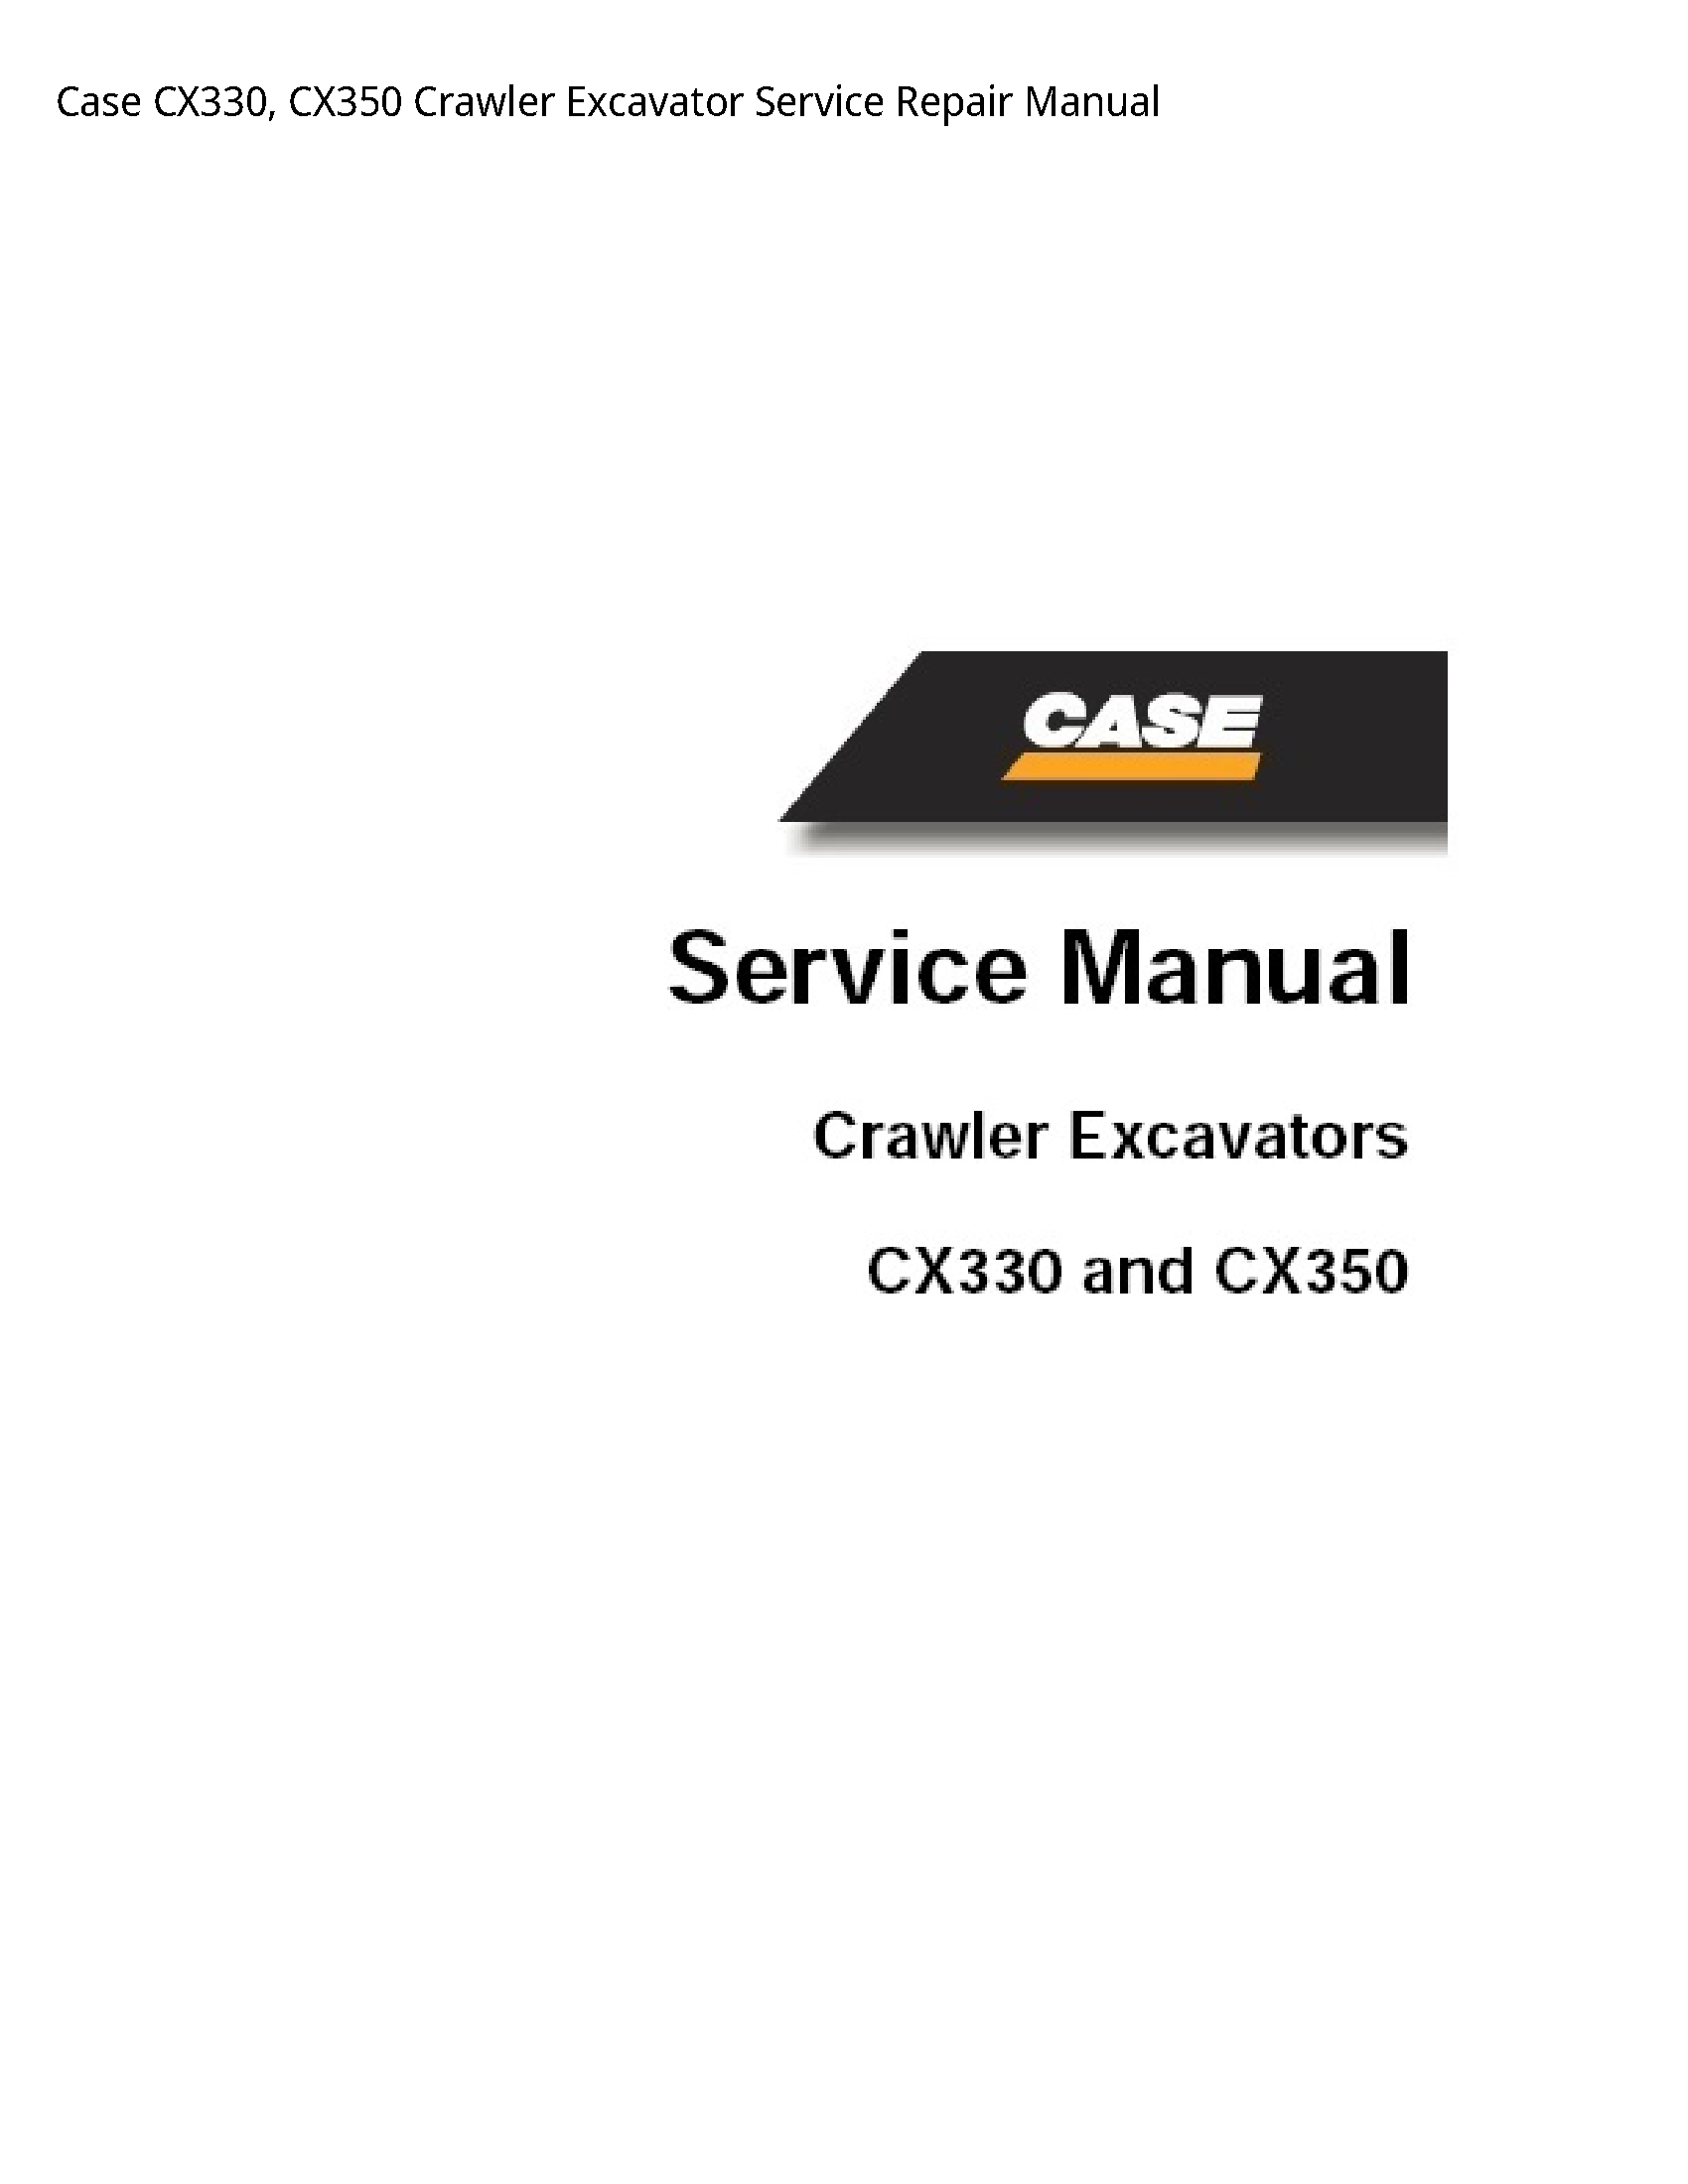 Case/Case IH CX330 Crawler Excavator manual